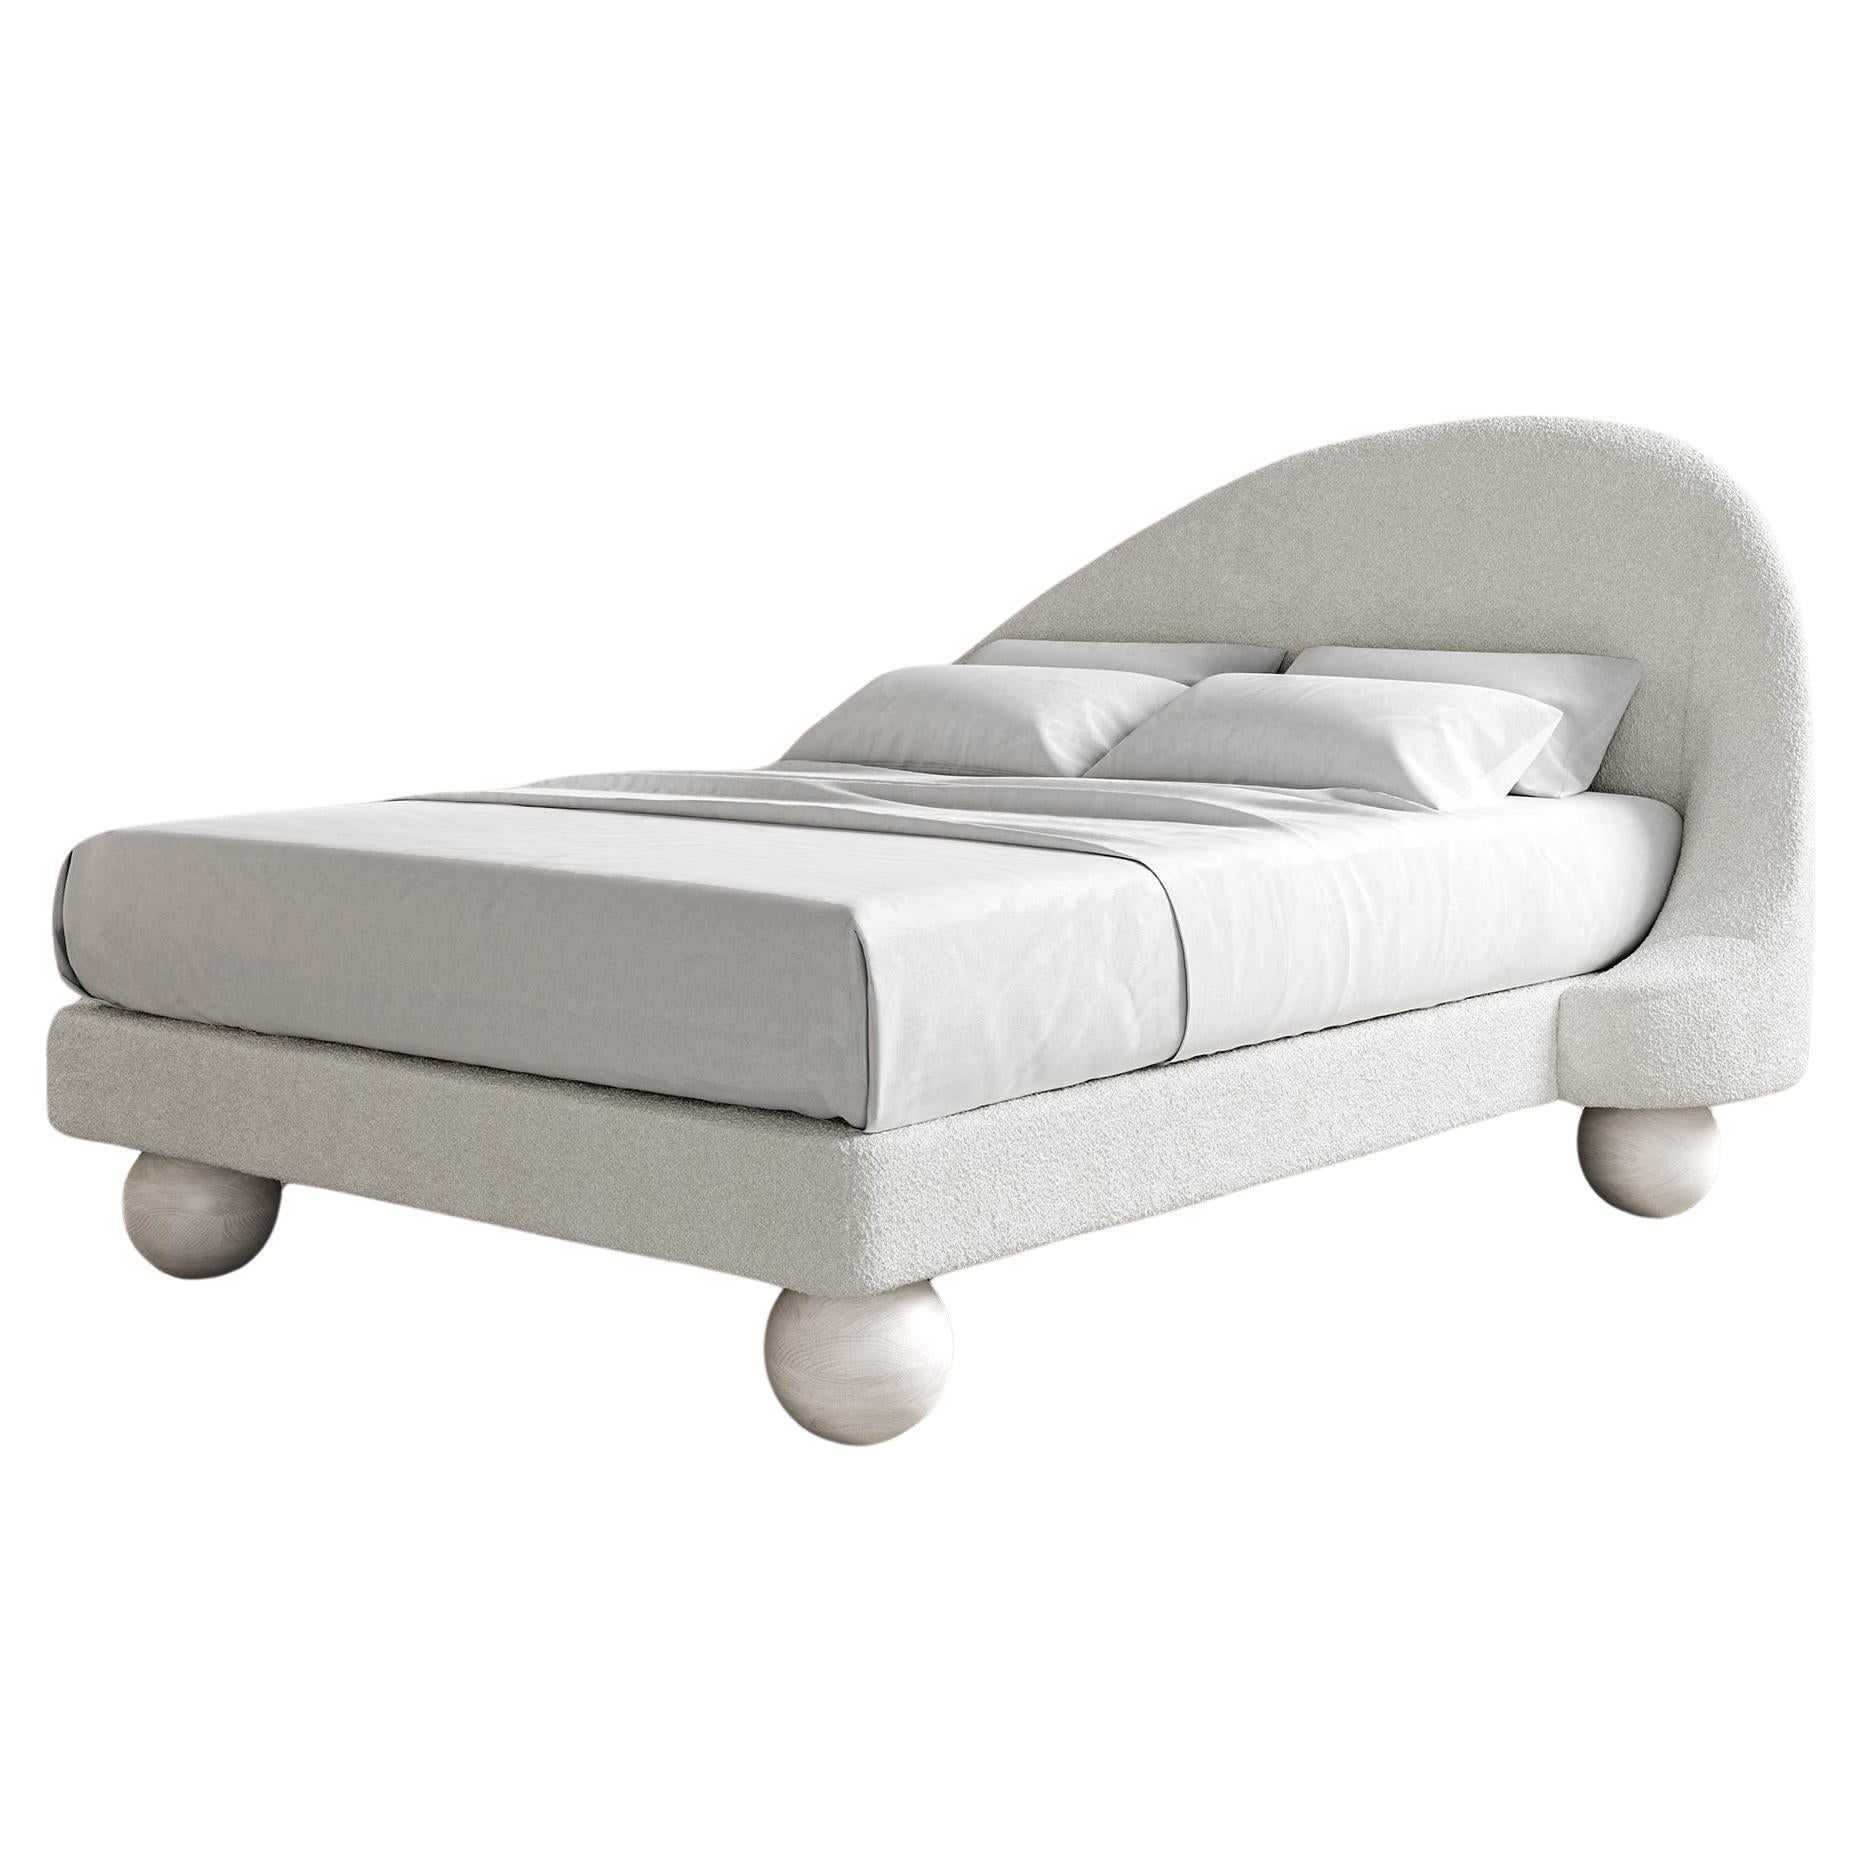 SANDRINE BED - Moderner Rahmen + Kopfteil aus Cloud Boucle + Bein aus gebleichter weißer Eiche